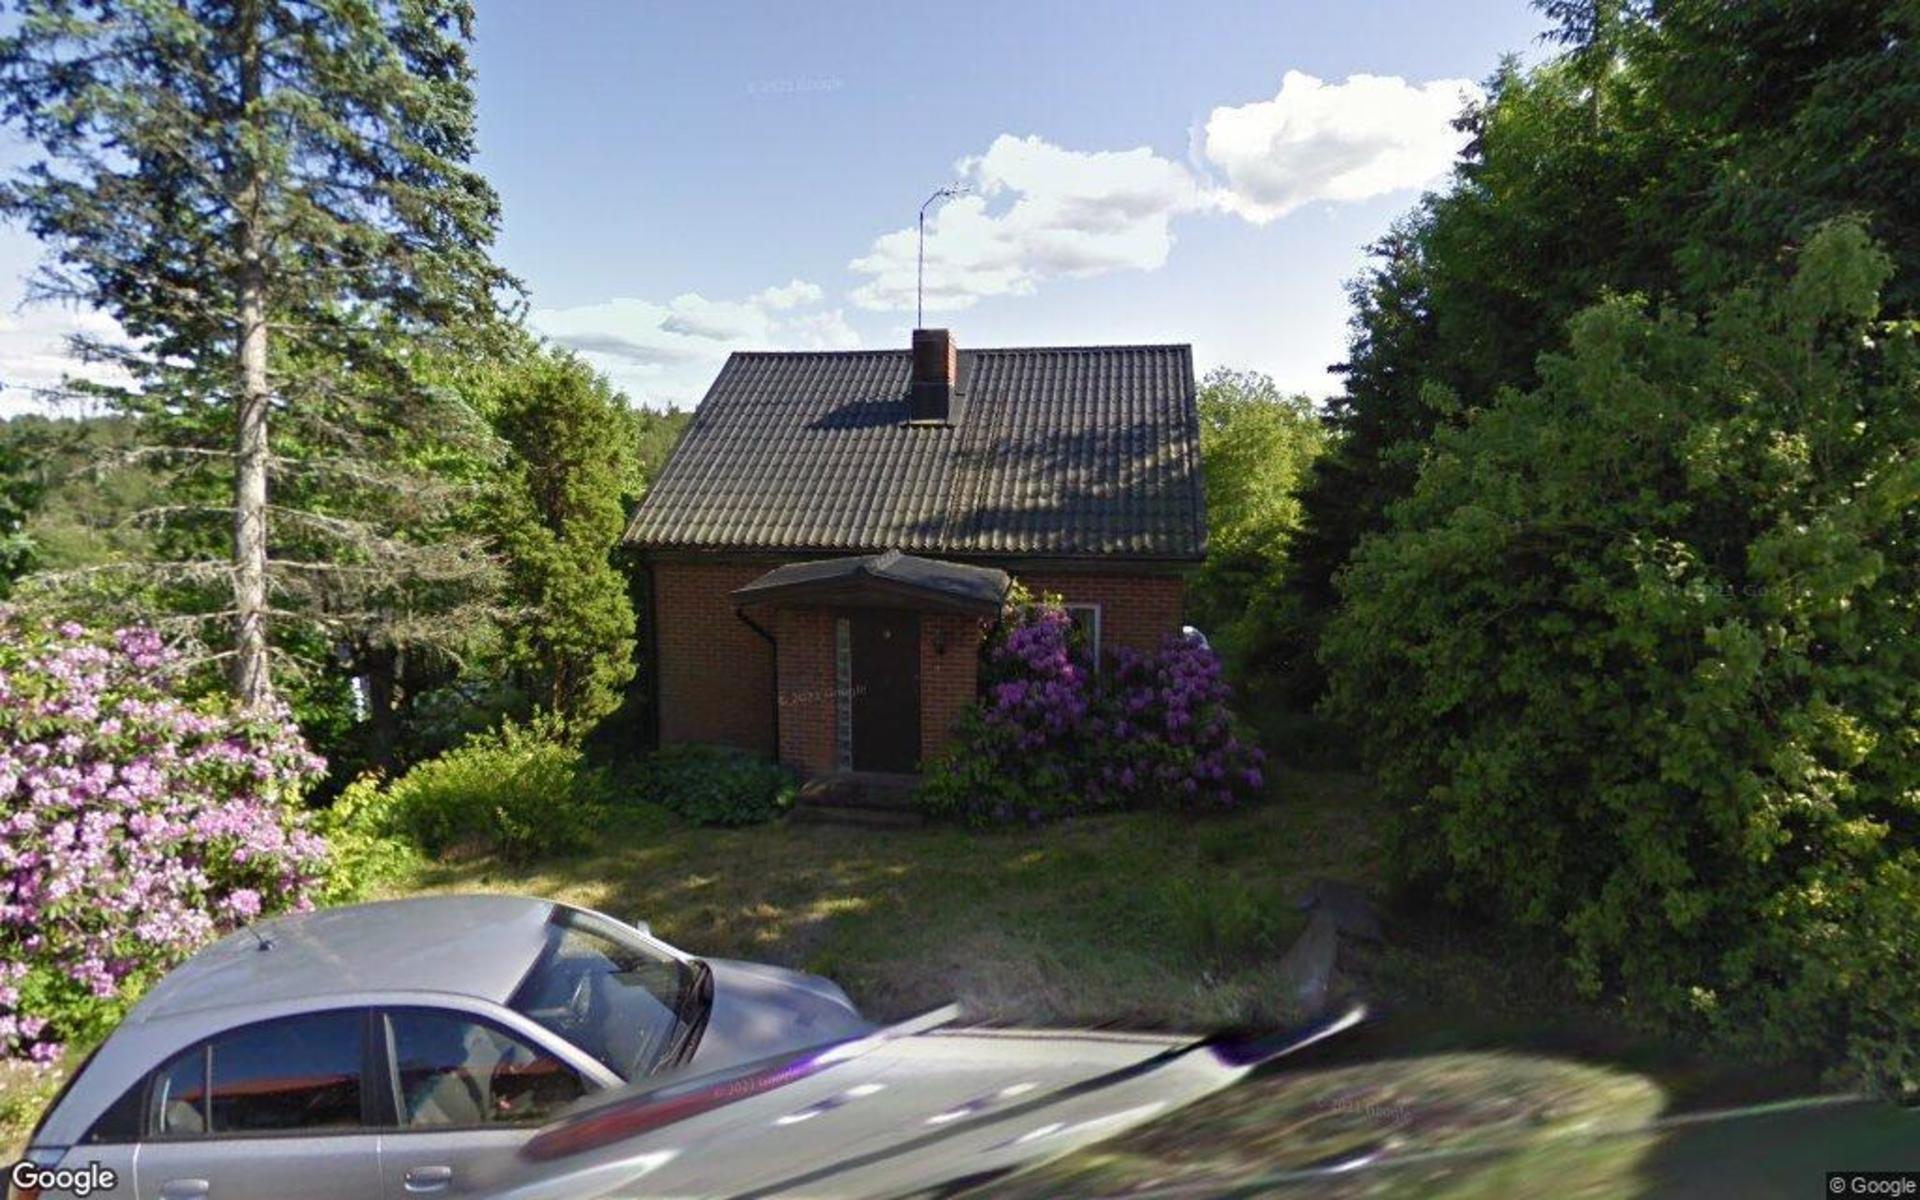 Fastigheten på adressen Solbacken 18 i Öjersjö har fått nya ägare. Köpet blev klart i november och priset blev 10,3 miljoner kronor. Huset byggdes 1931 och har en boyta på 102 kvadratmeter. Kvadratmeterpriset för fastigheten blev 100 500 kronor.